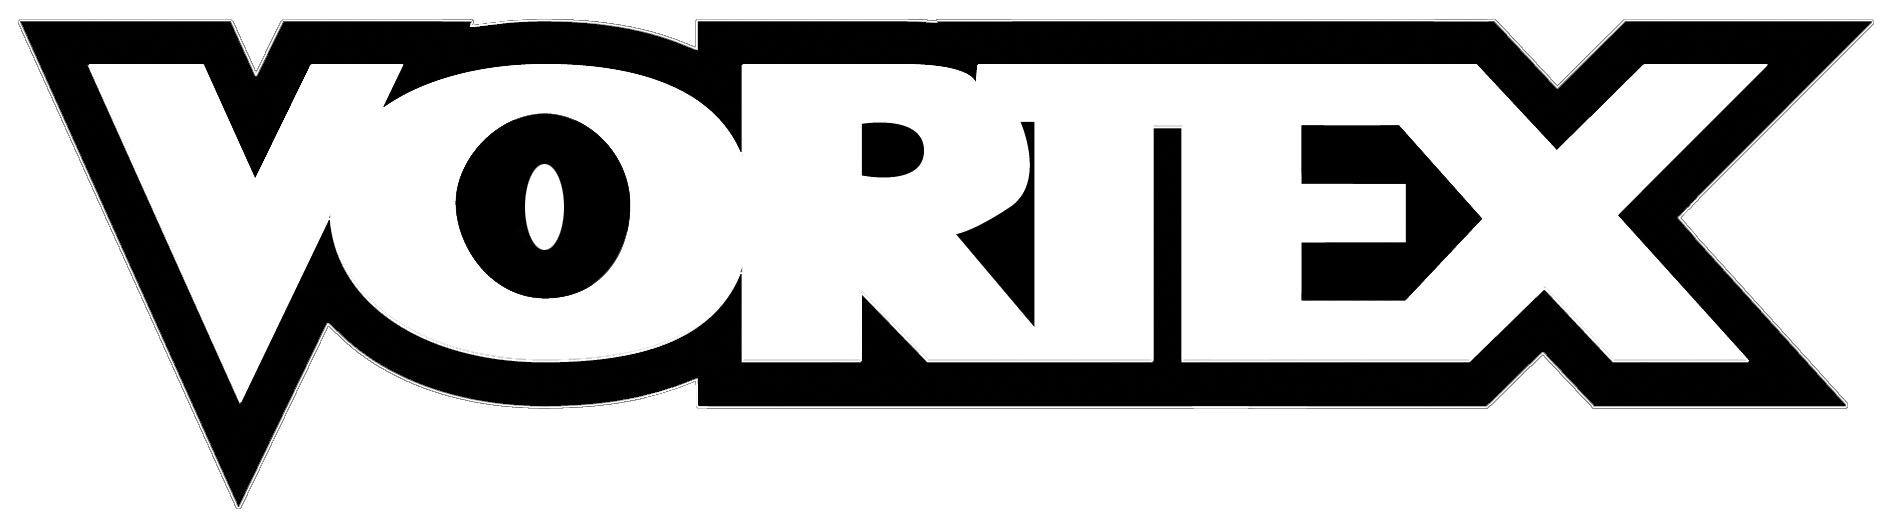 Vortex Logo - Vortex Logos